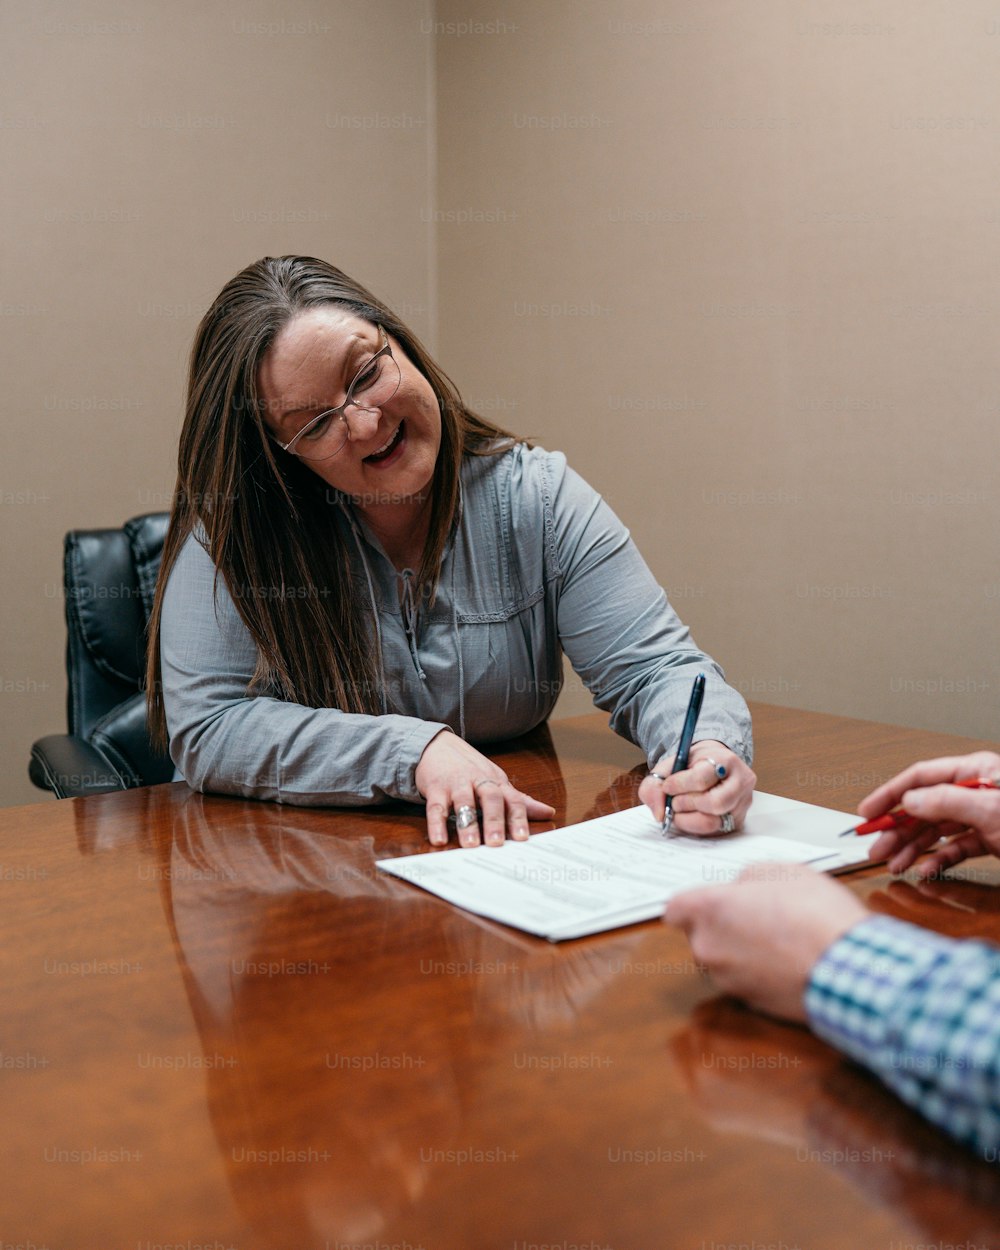 문서에 서명하는 테이블에 앉아 있는 여자